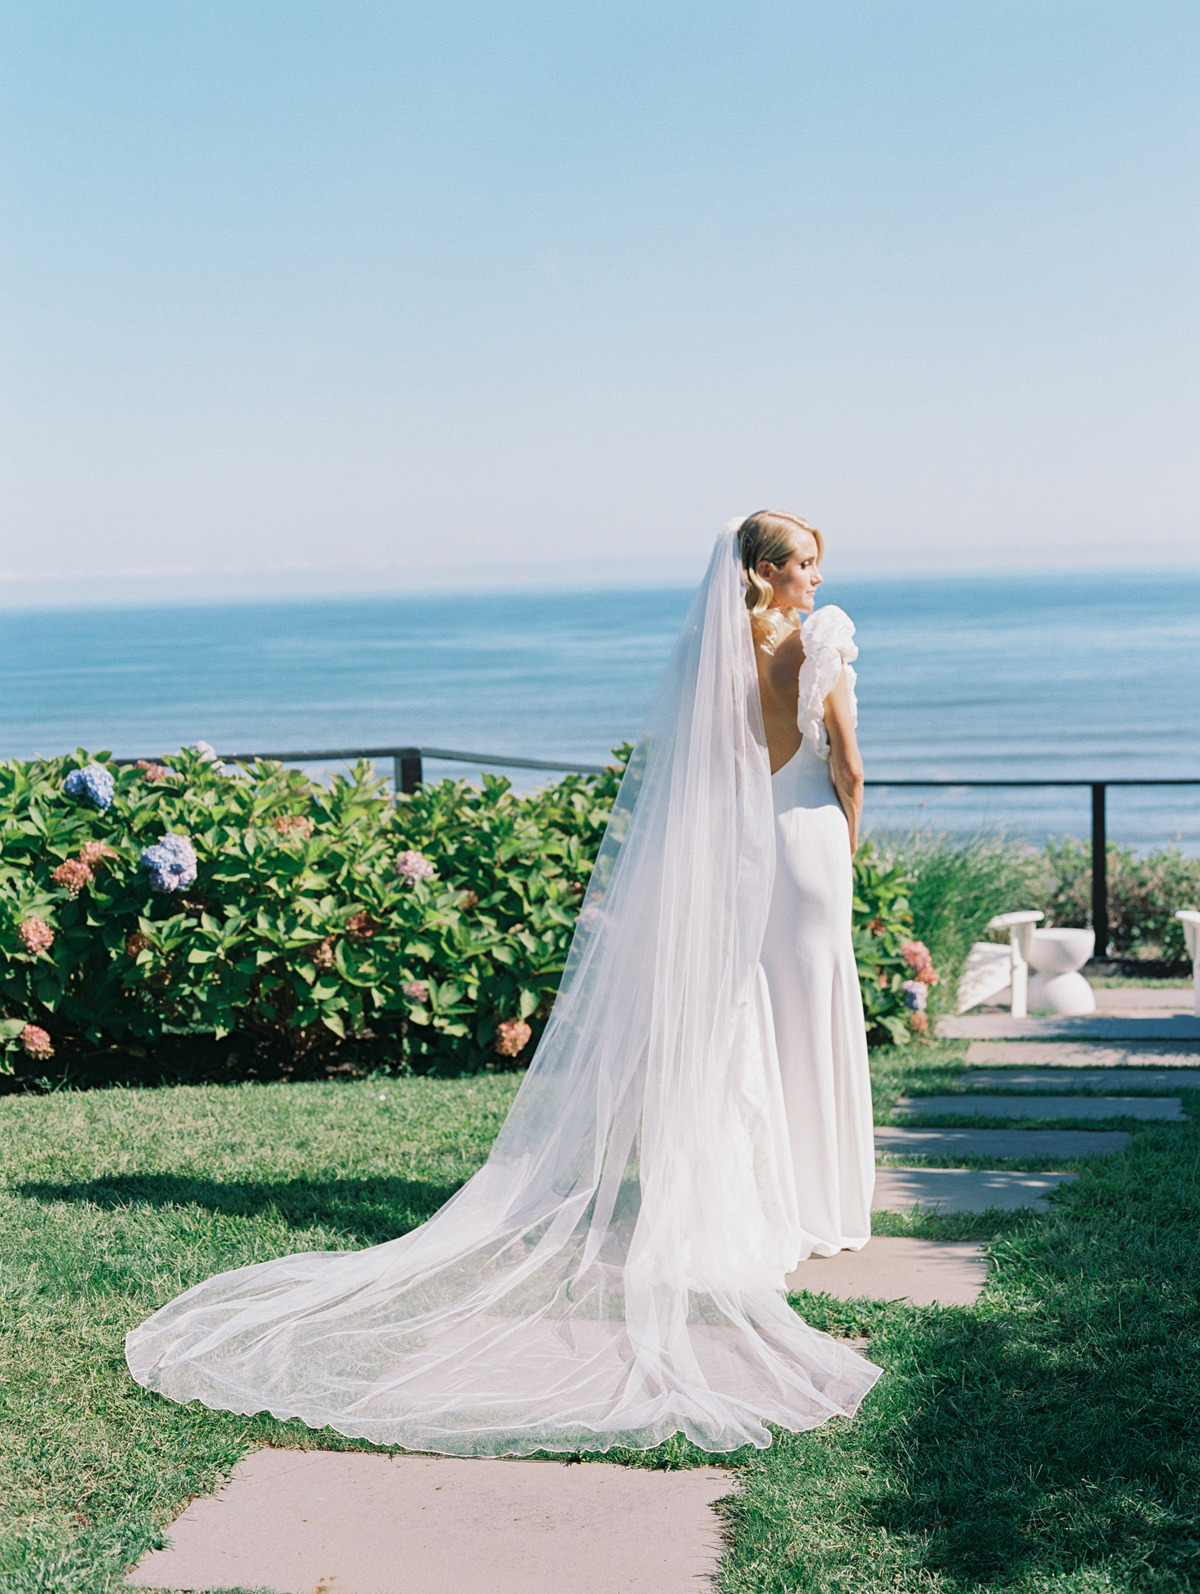 Portrait of bride's dress and veil in garden by ocean